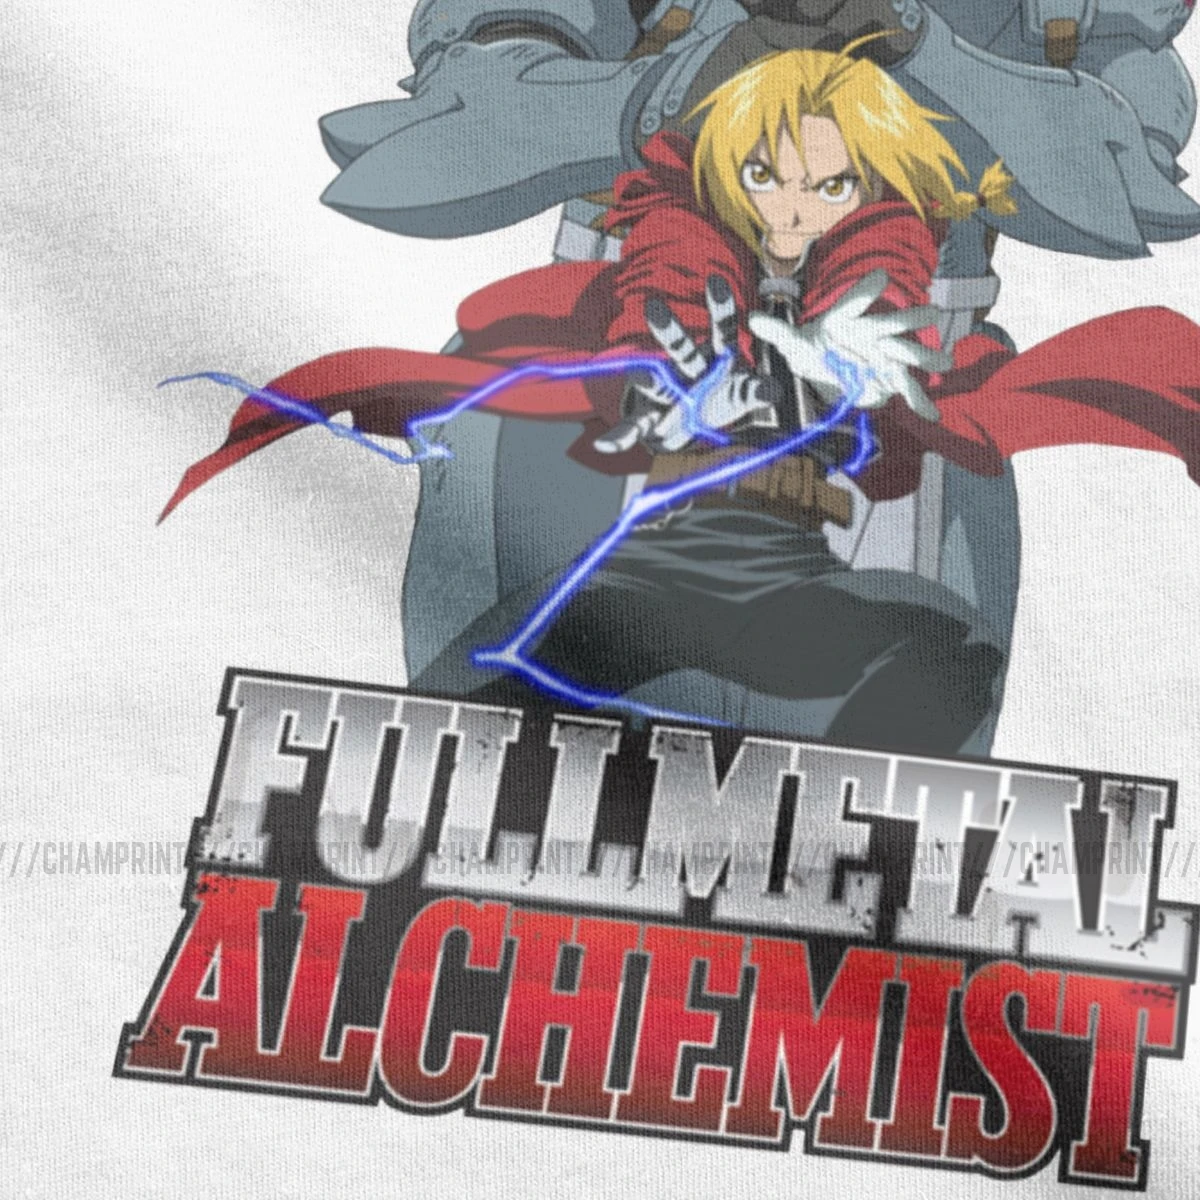 Muži Fullmetal Alchemist Je Elric Bros, T Košele Bratstva Pride Anime Edward Elric Oblečenie Zábava Tee Tričko Plus Veľkosť Trička